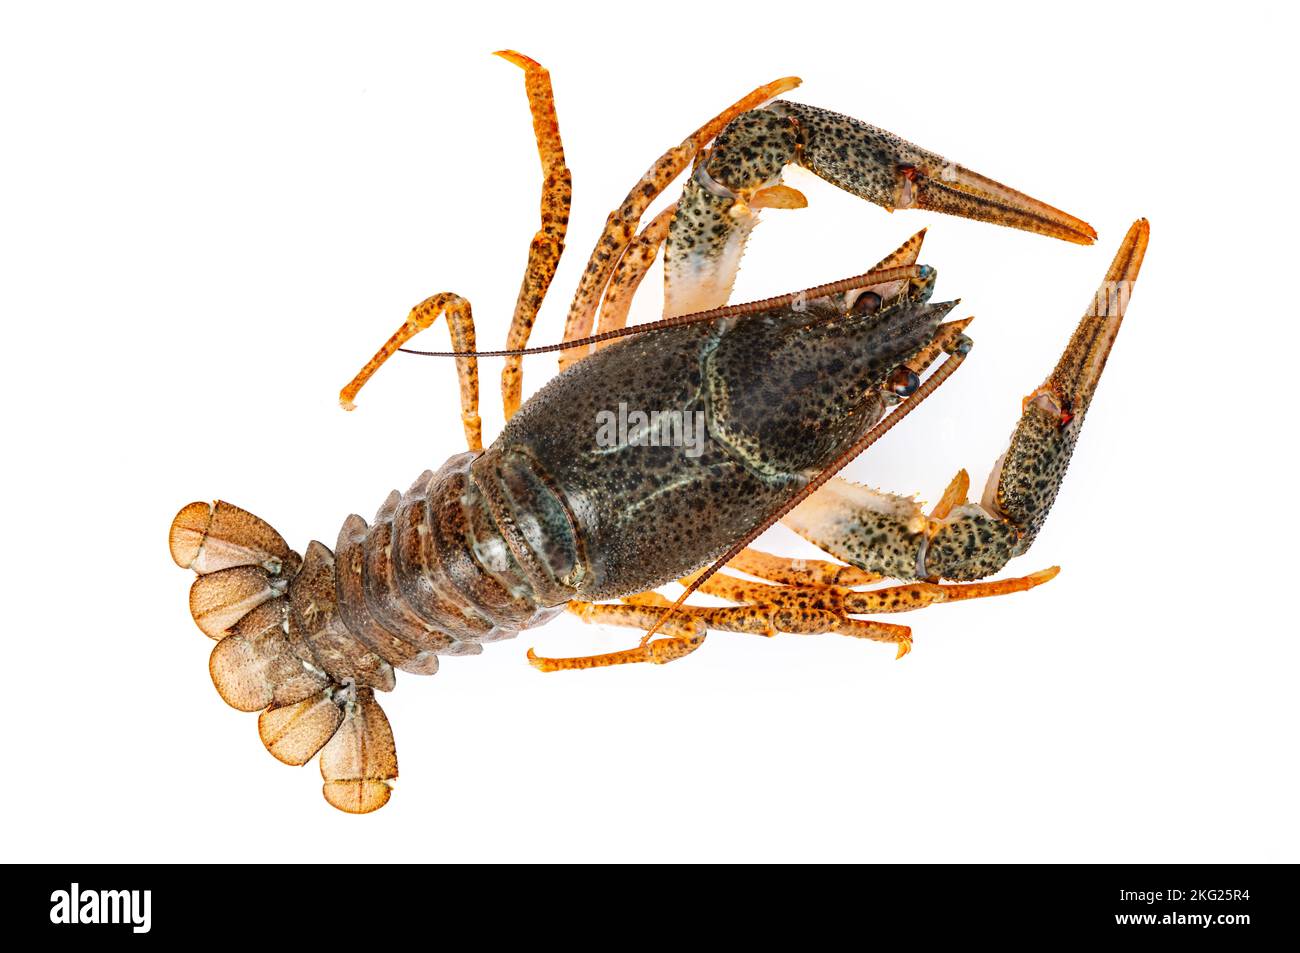 Crayfish or lake crab isolated on white background Stock Photo